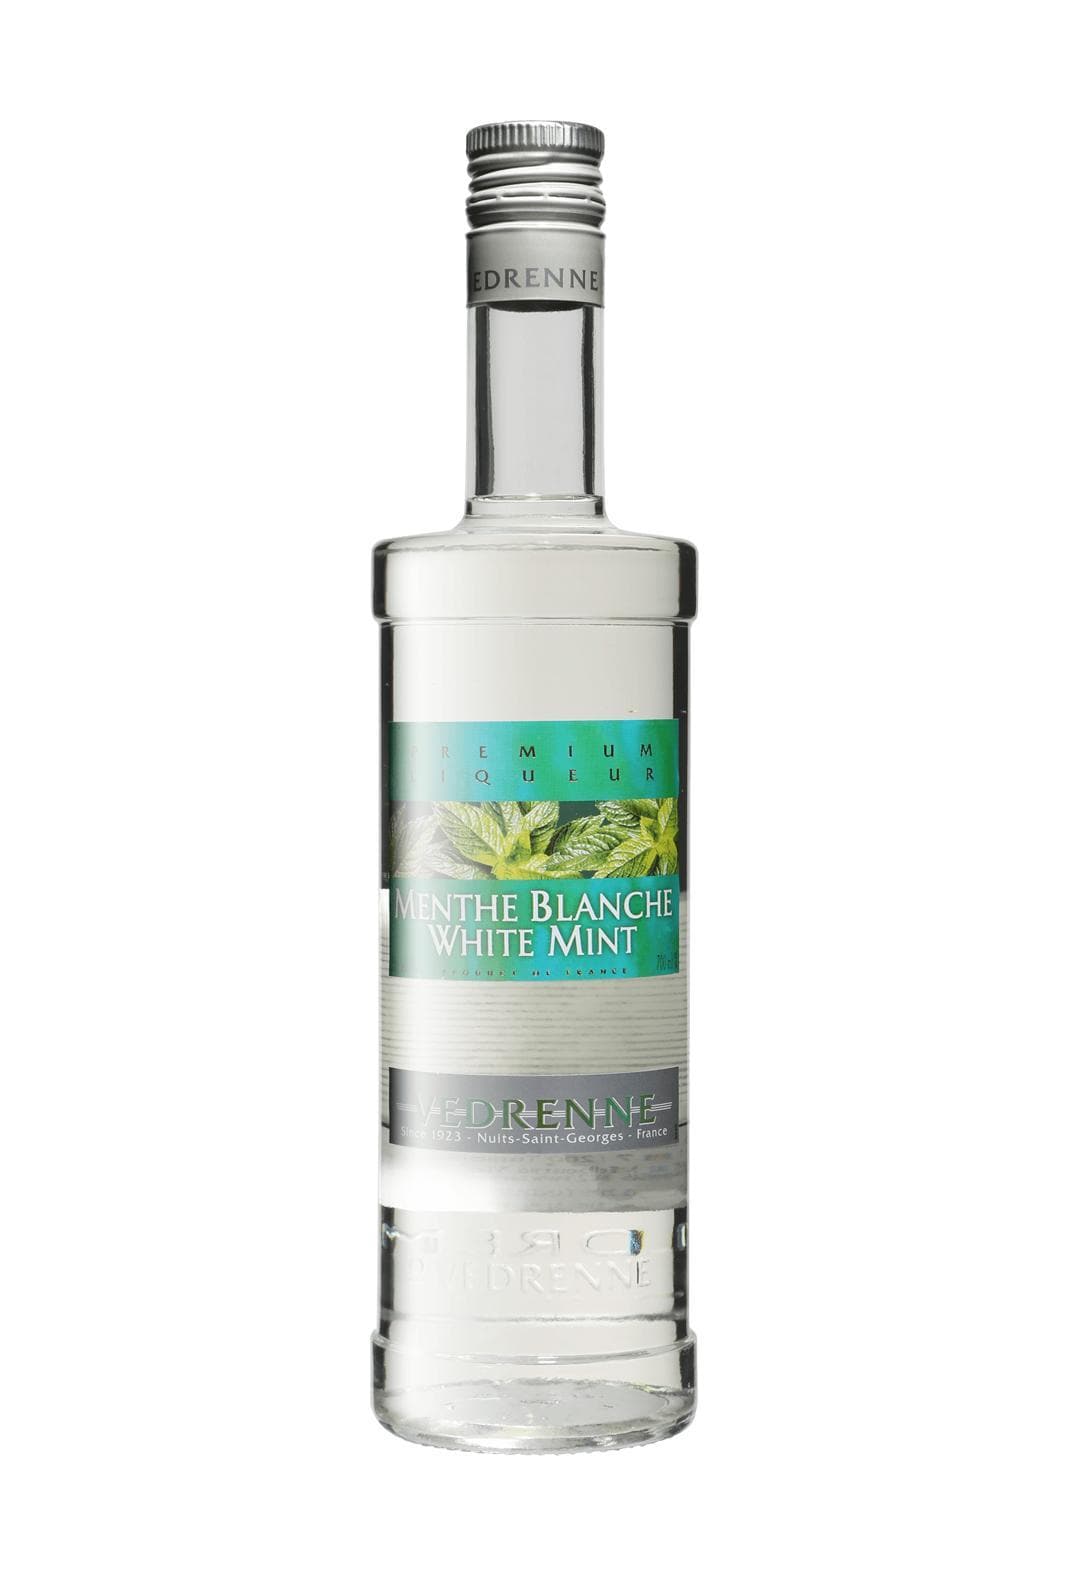 Vedrenne Liqueur de Menthe Blanche (White Mint) 18% 700ml | Liqueurs | Shop online at Spirits of France